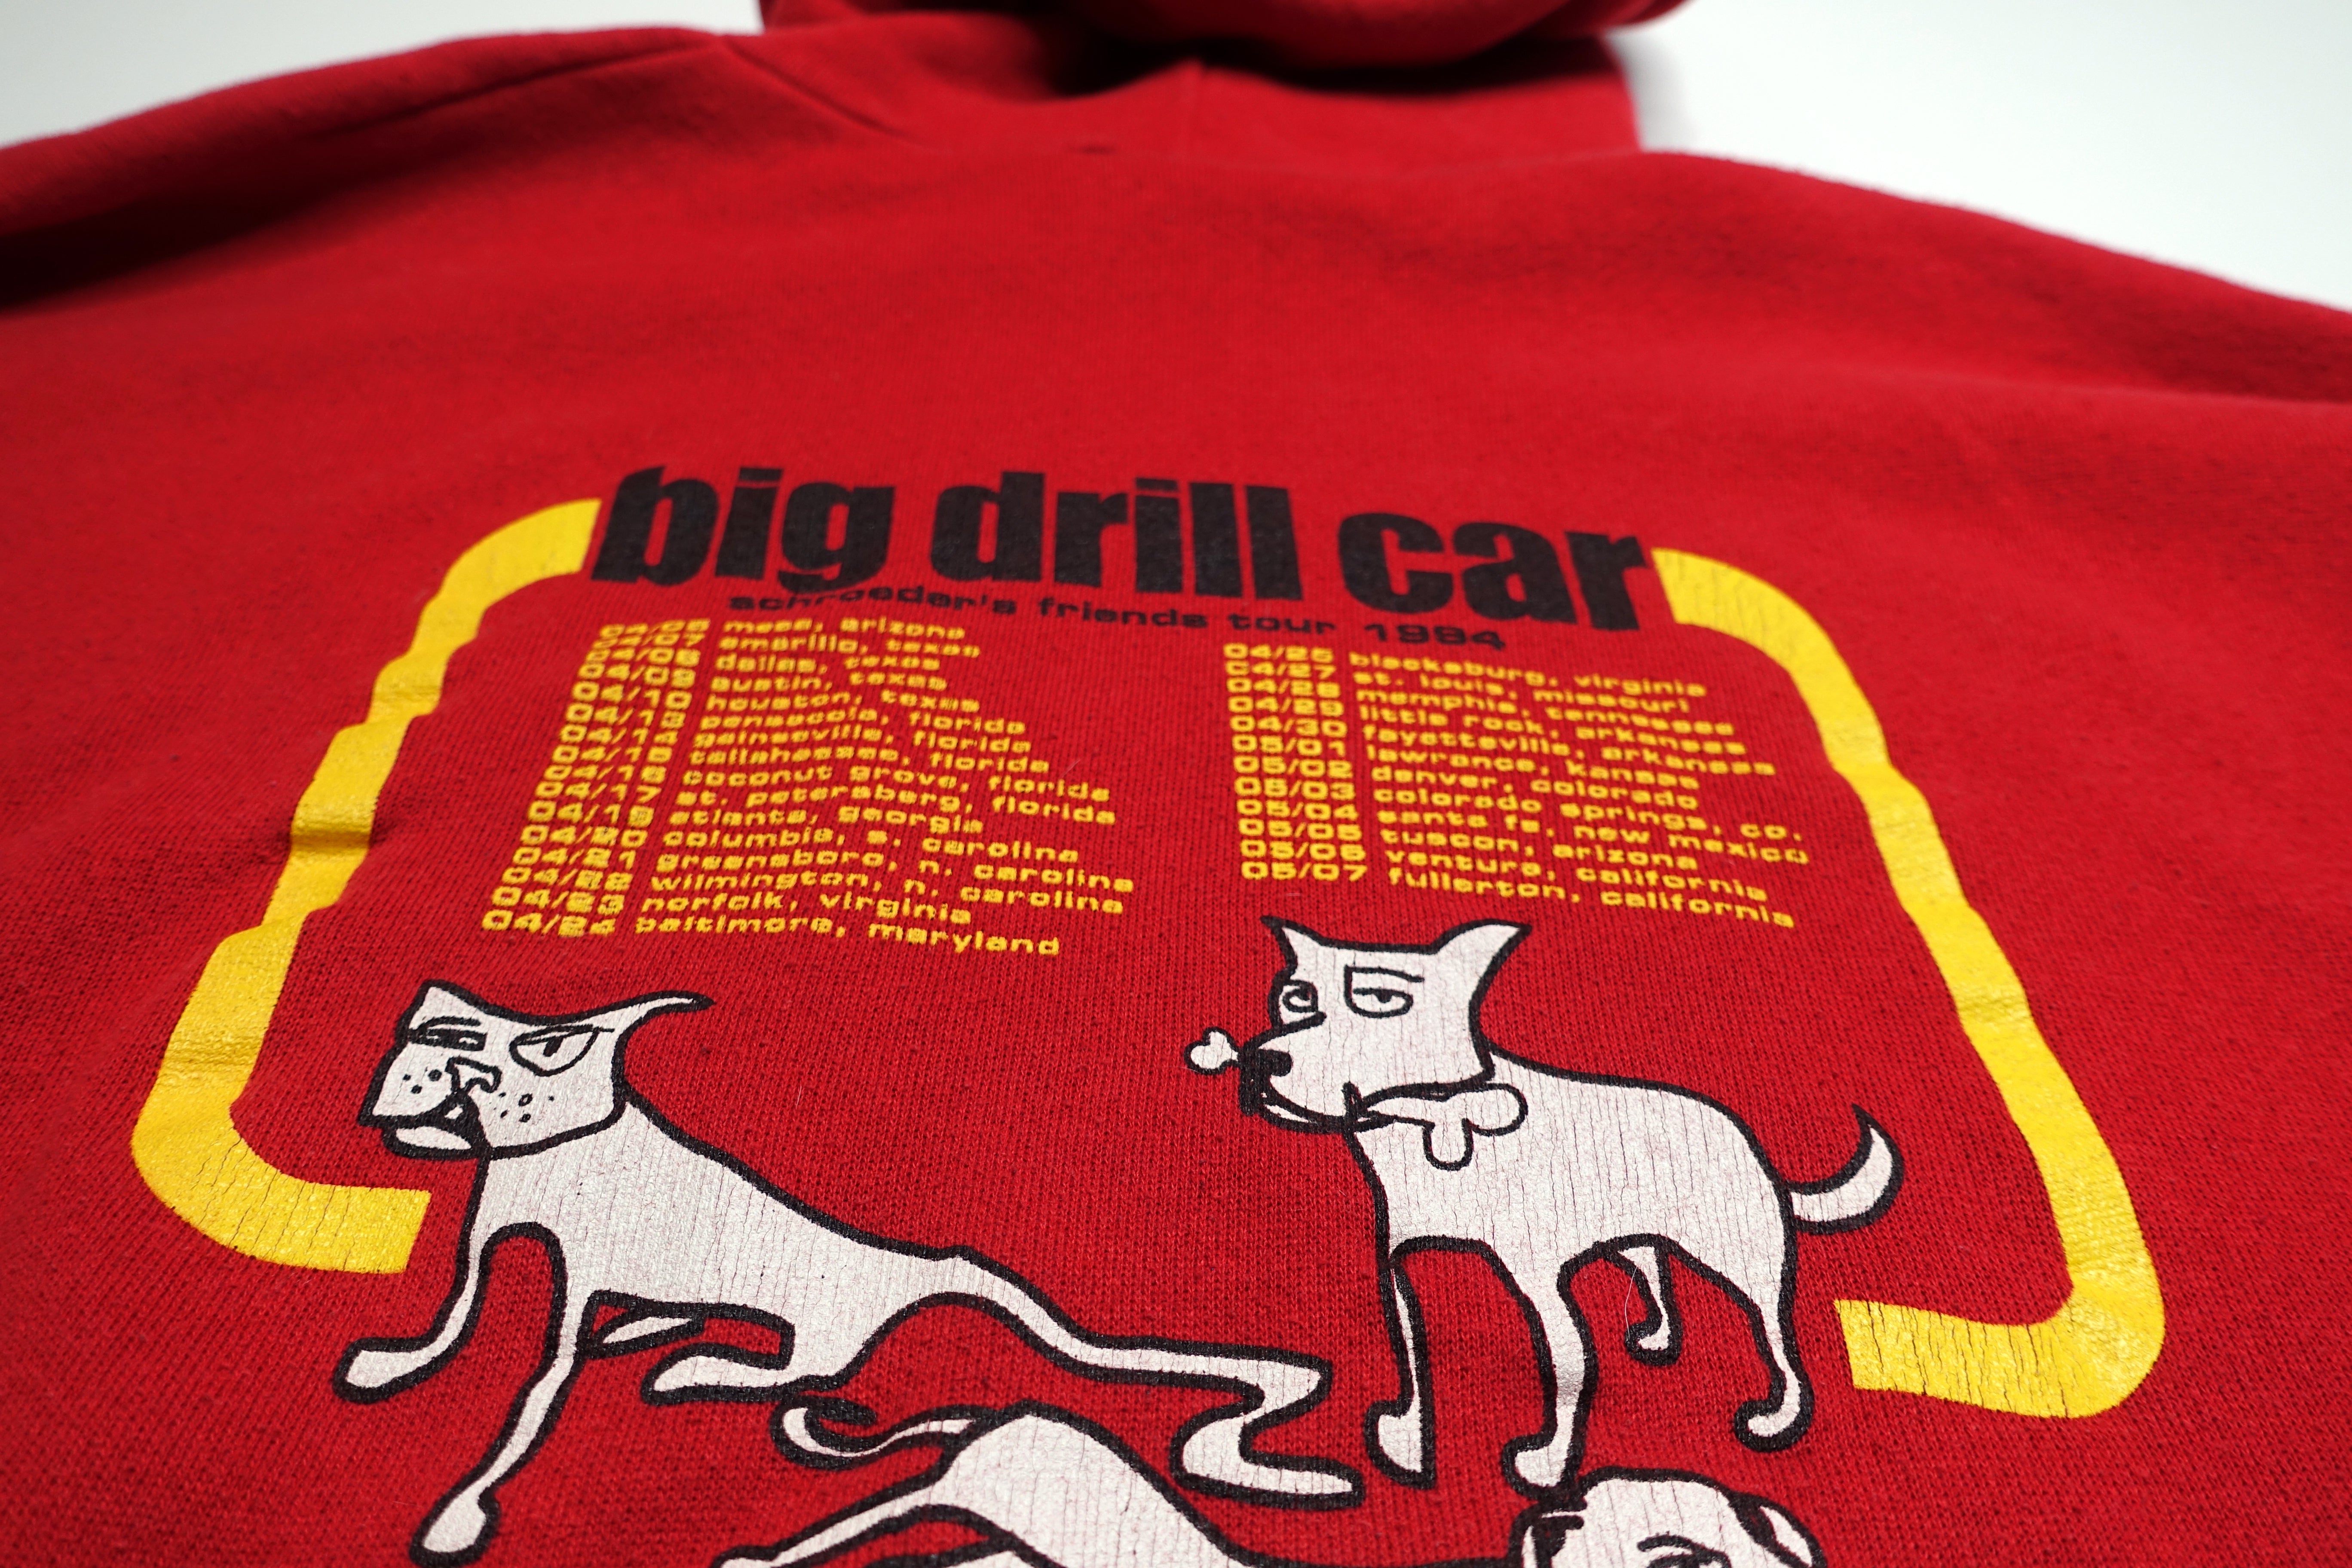 Big Drill Car - Schroeder's Friends 1994 US Tour Sweat Shirt Size XL